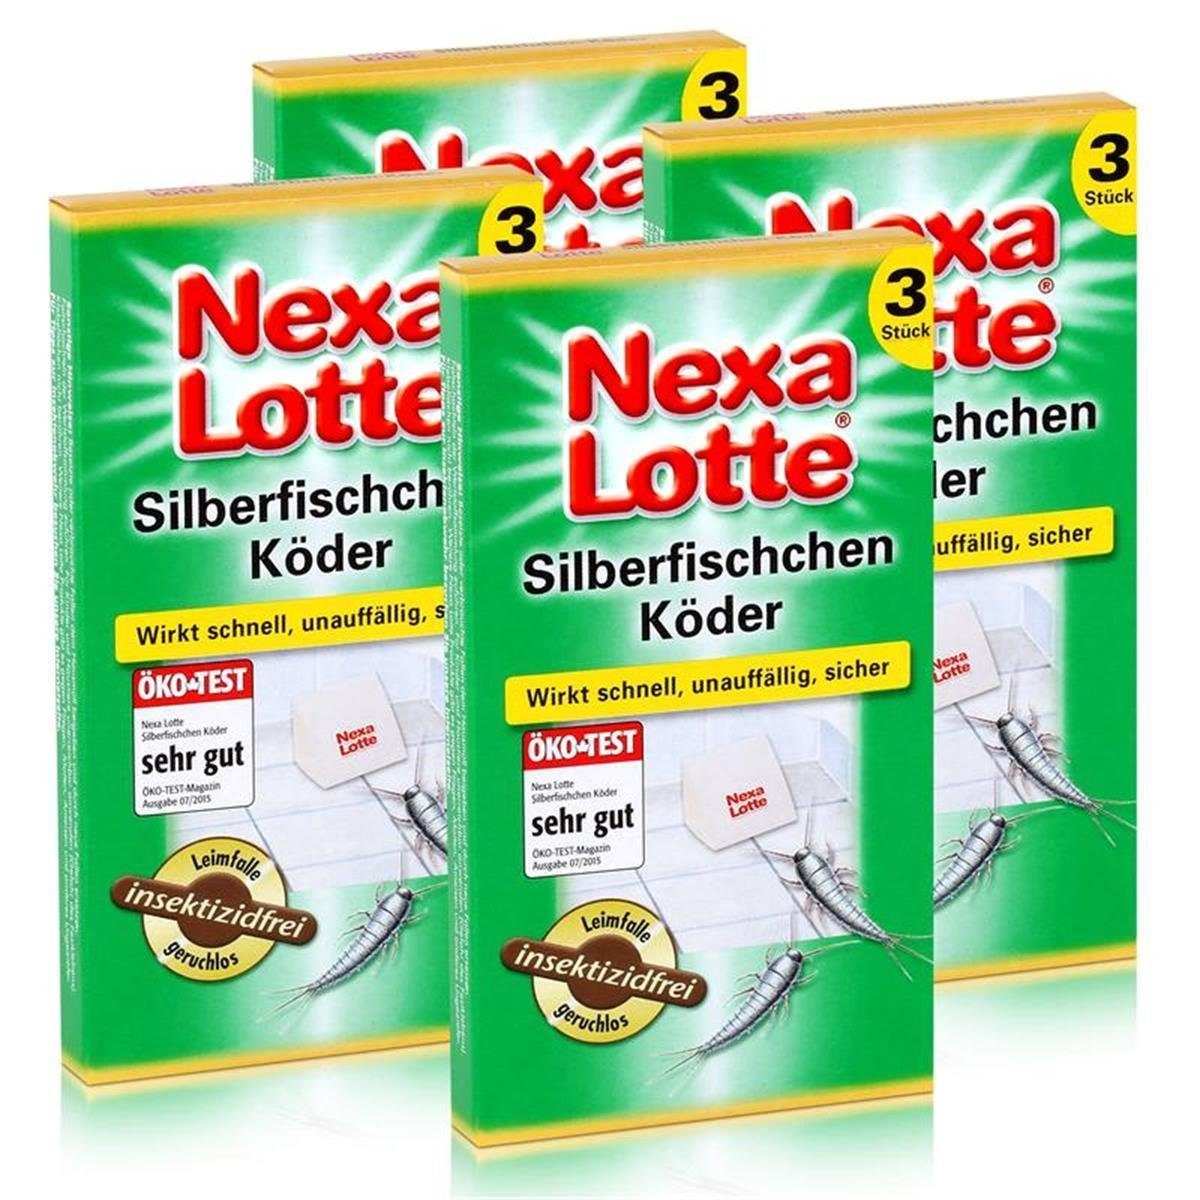 Nexa Lotte Insektenfalle Nexa Lotte Silberfischchen Köder 3 stk. - Leimfalle geruchlos (4er Pac